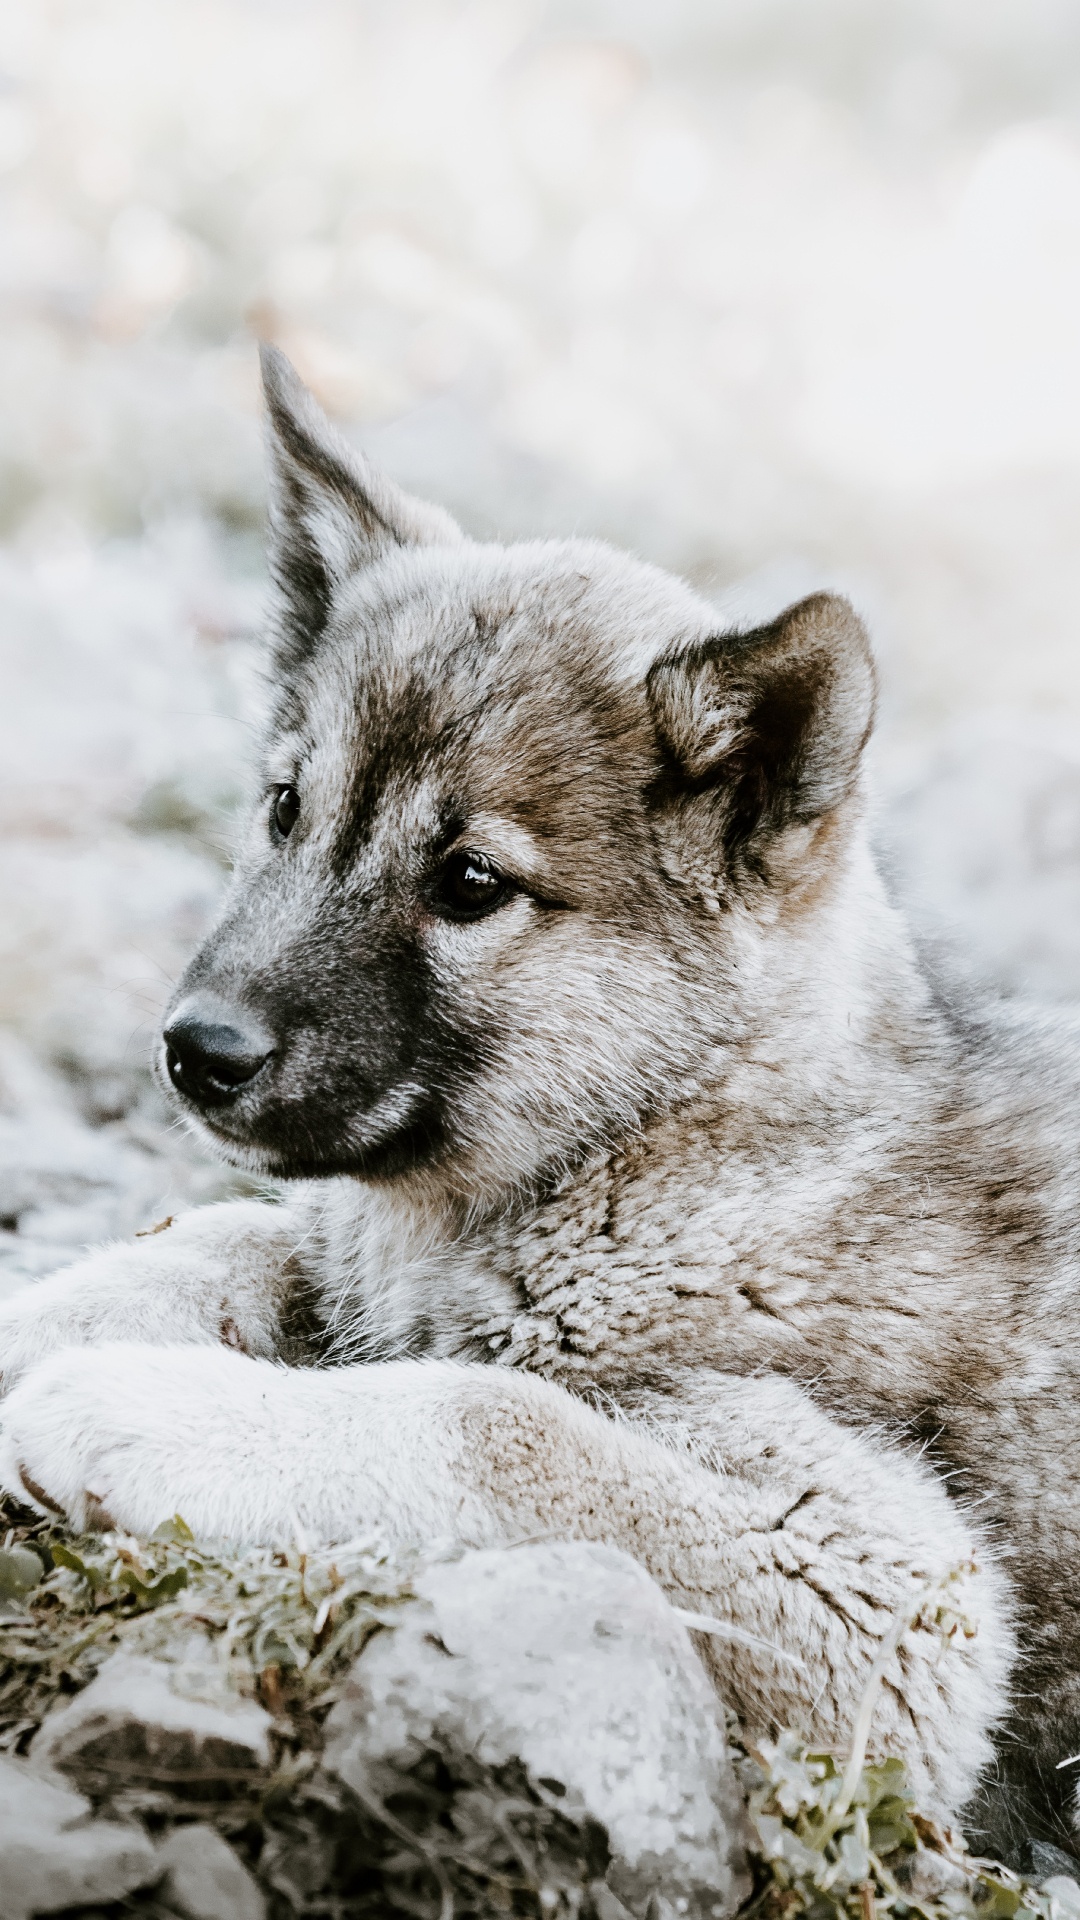 捷克斯洛伐克那只狼狗, 小狗, 挪威elkhound, 那只狼狗, 野生动物 壁纸 1080x1920 允许